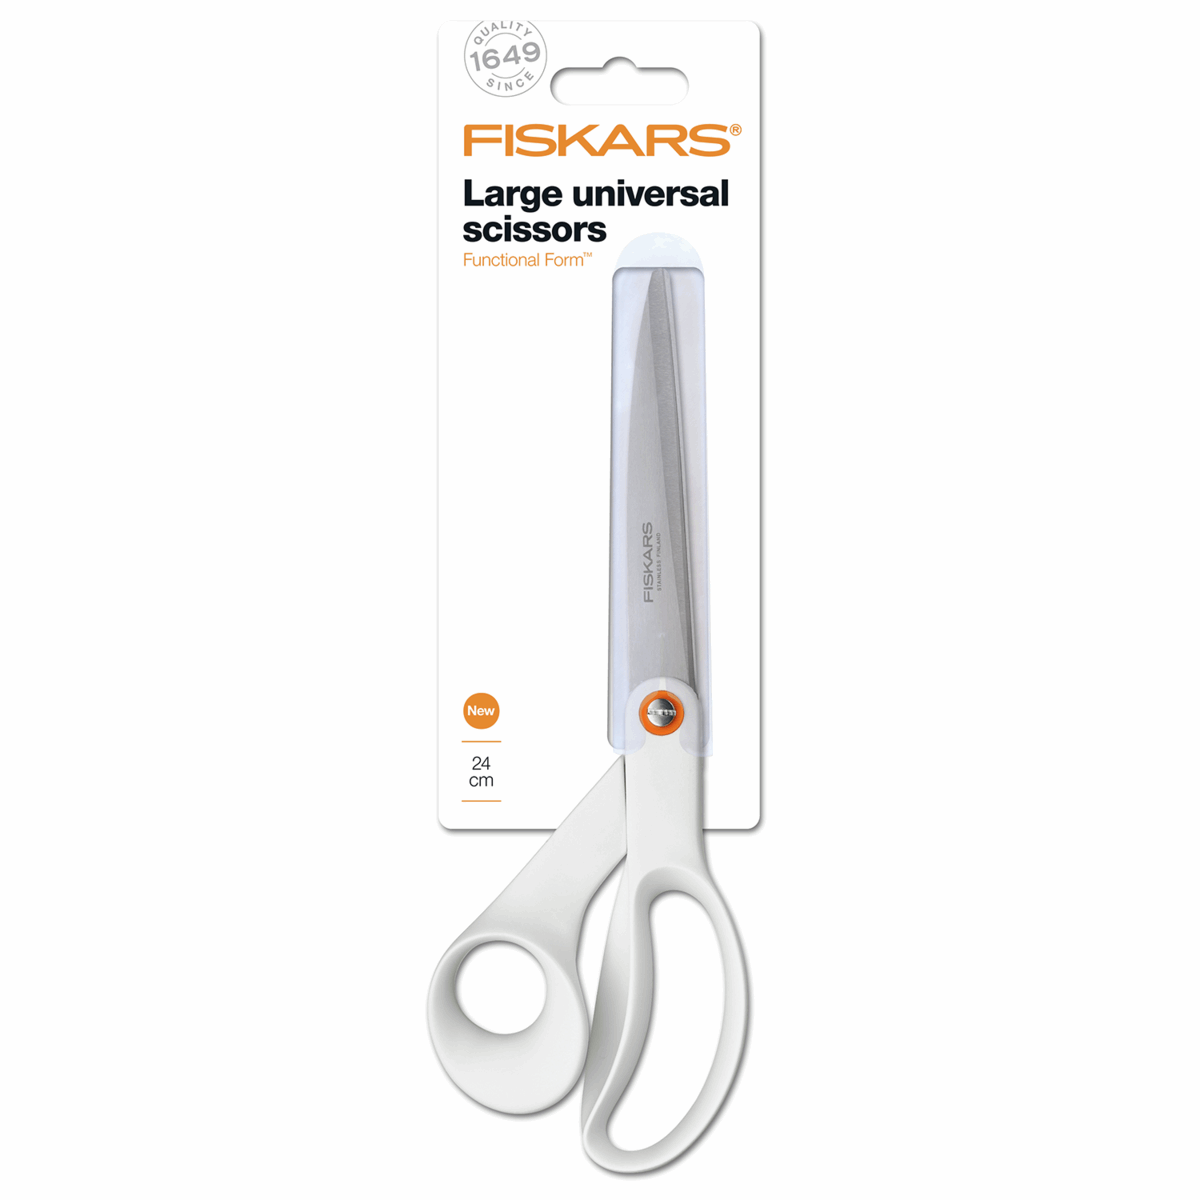 Fiskars multi-use scissors